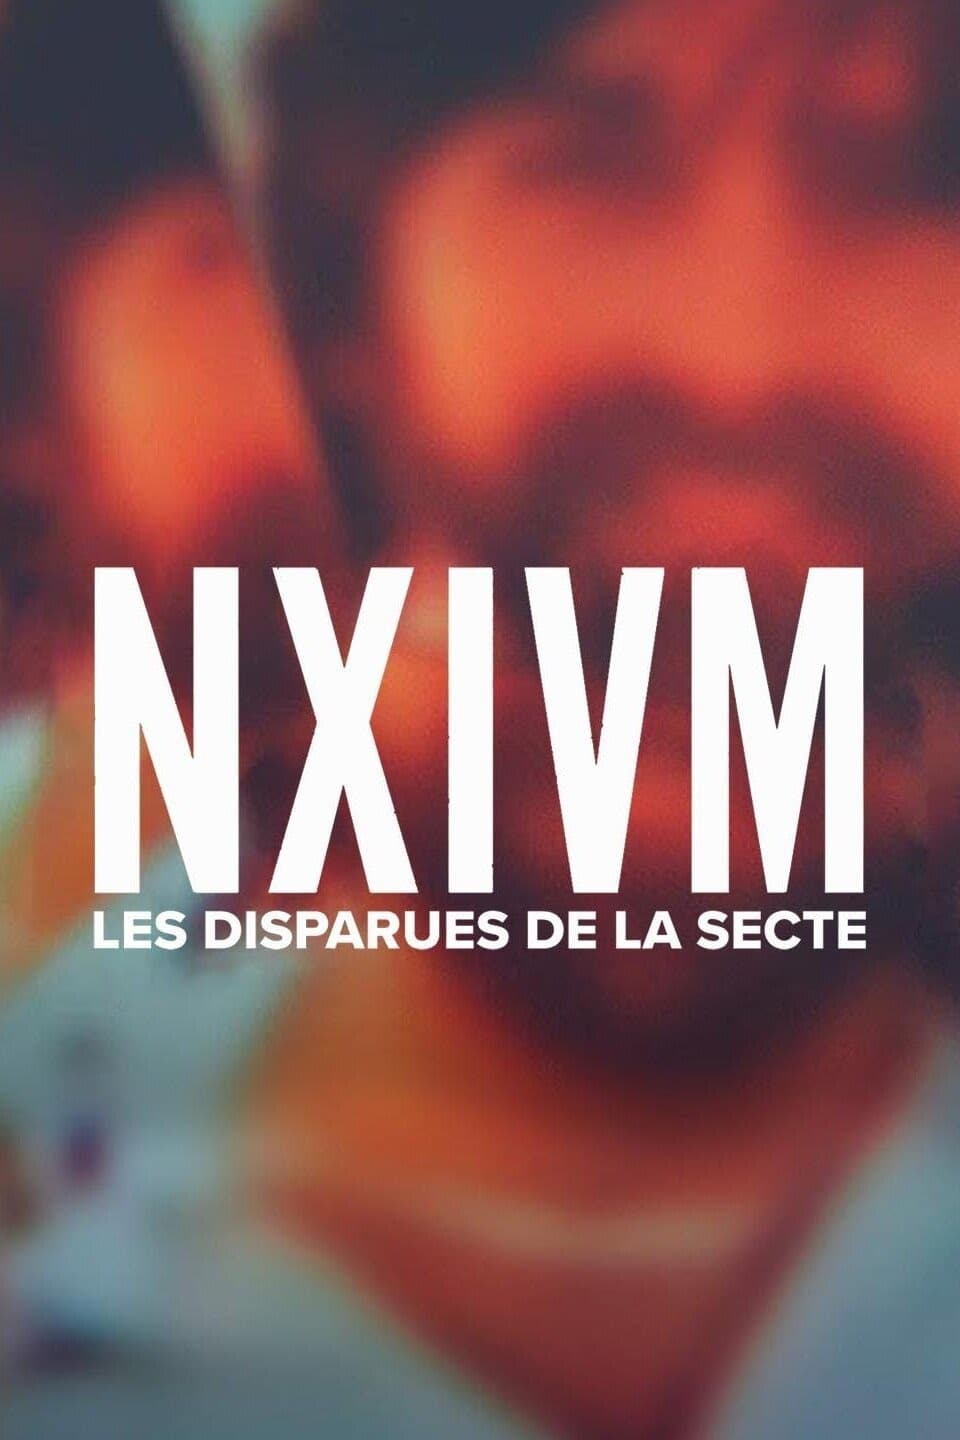 NXIVM: Les disparues de la secte